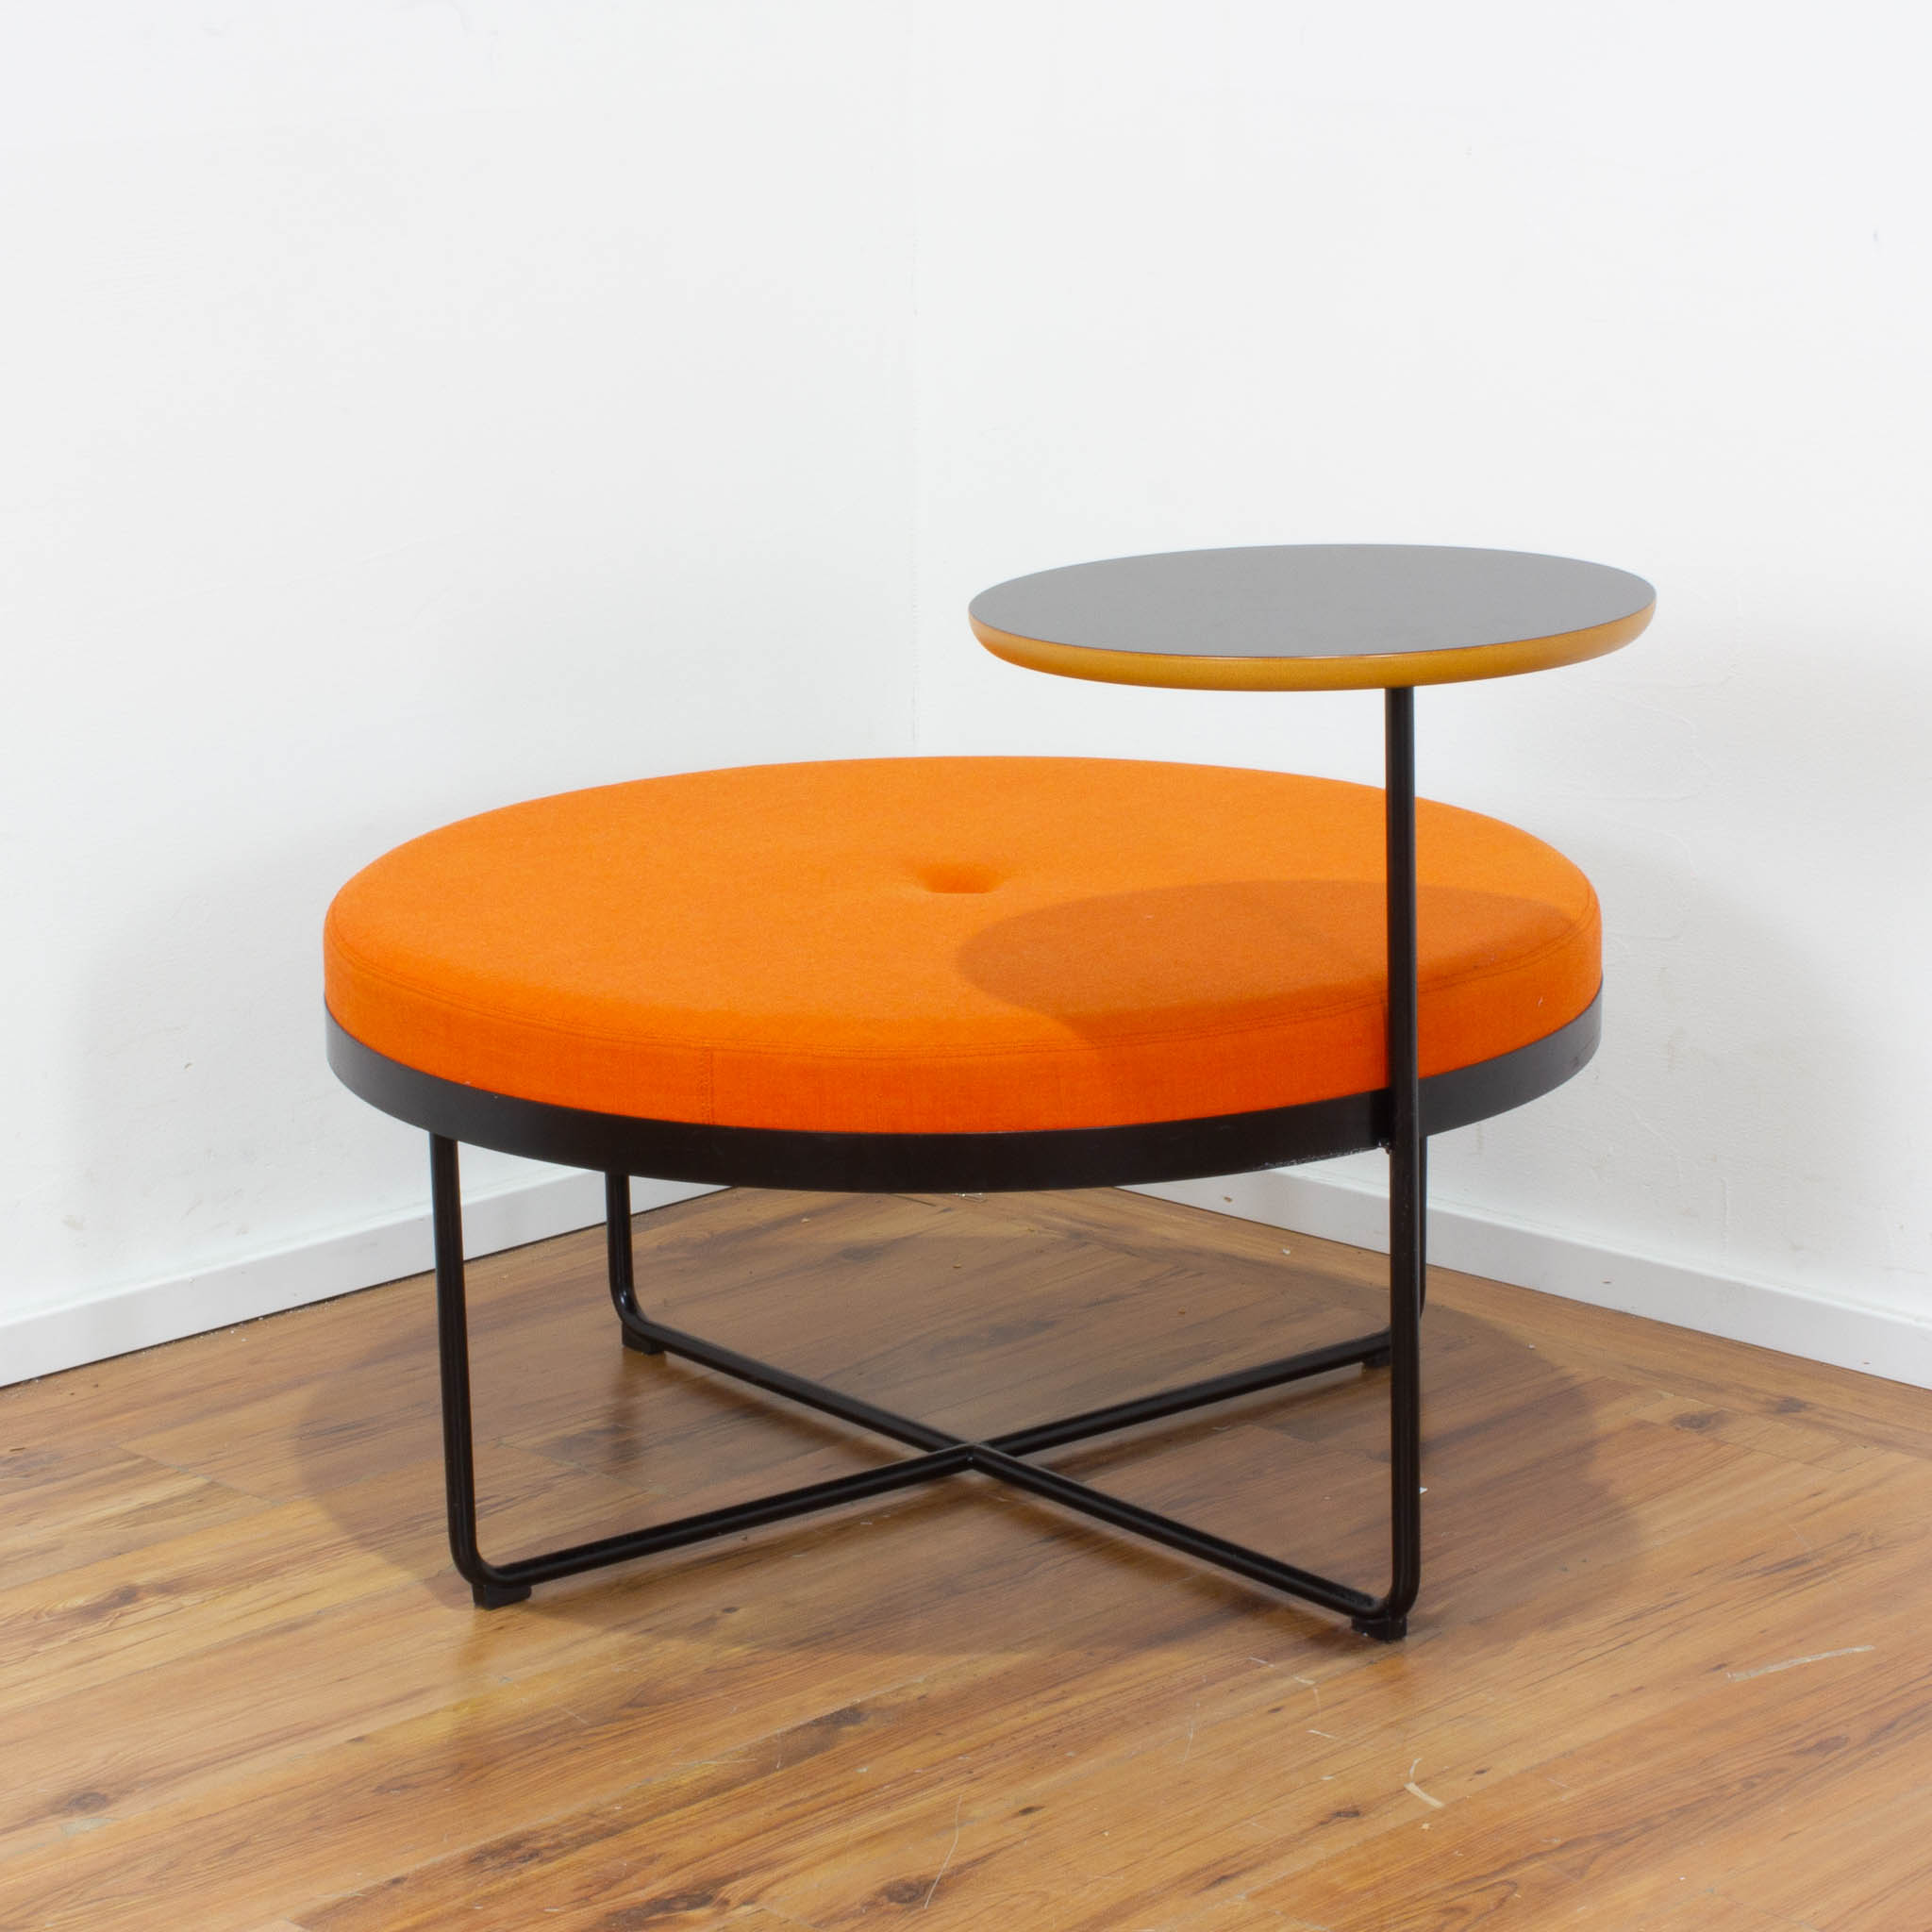 Johanson Design "Shima" Hocker mit einem Tisch - ø 90 cm - orange